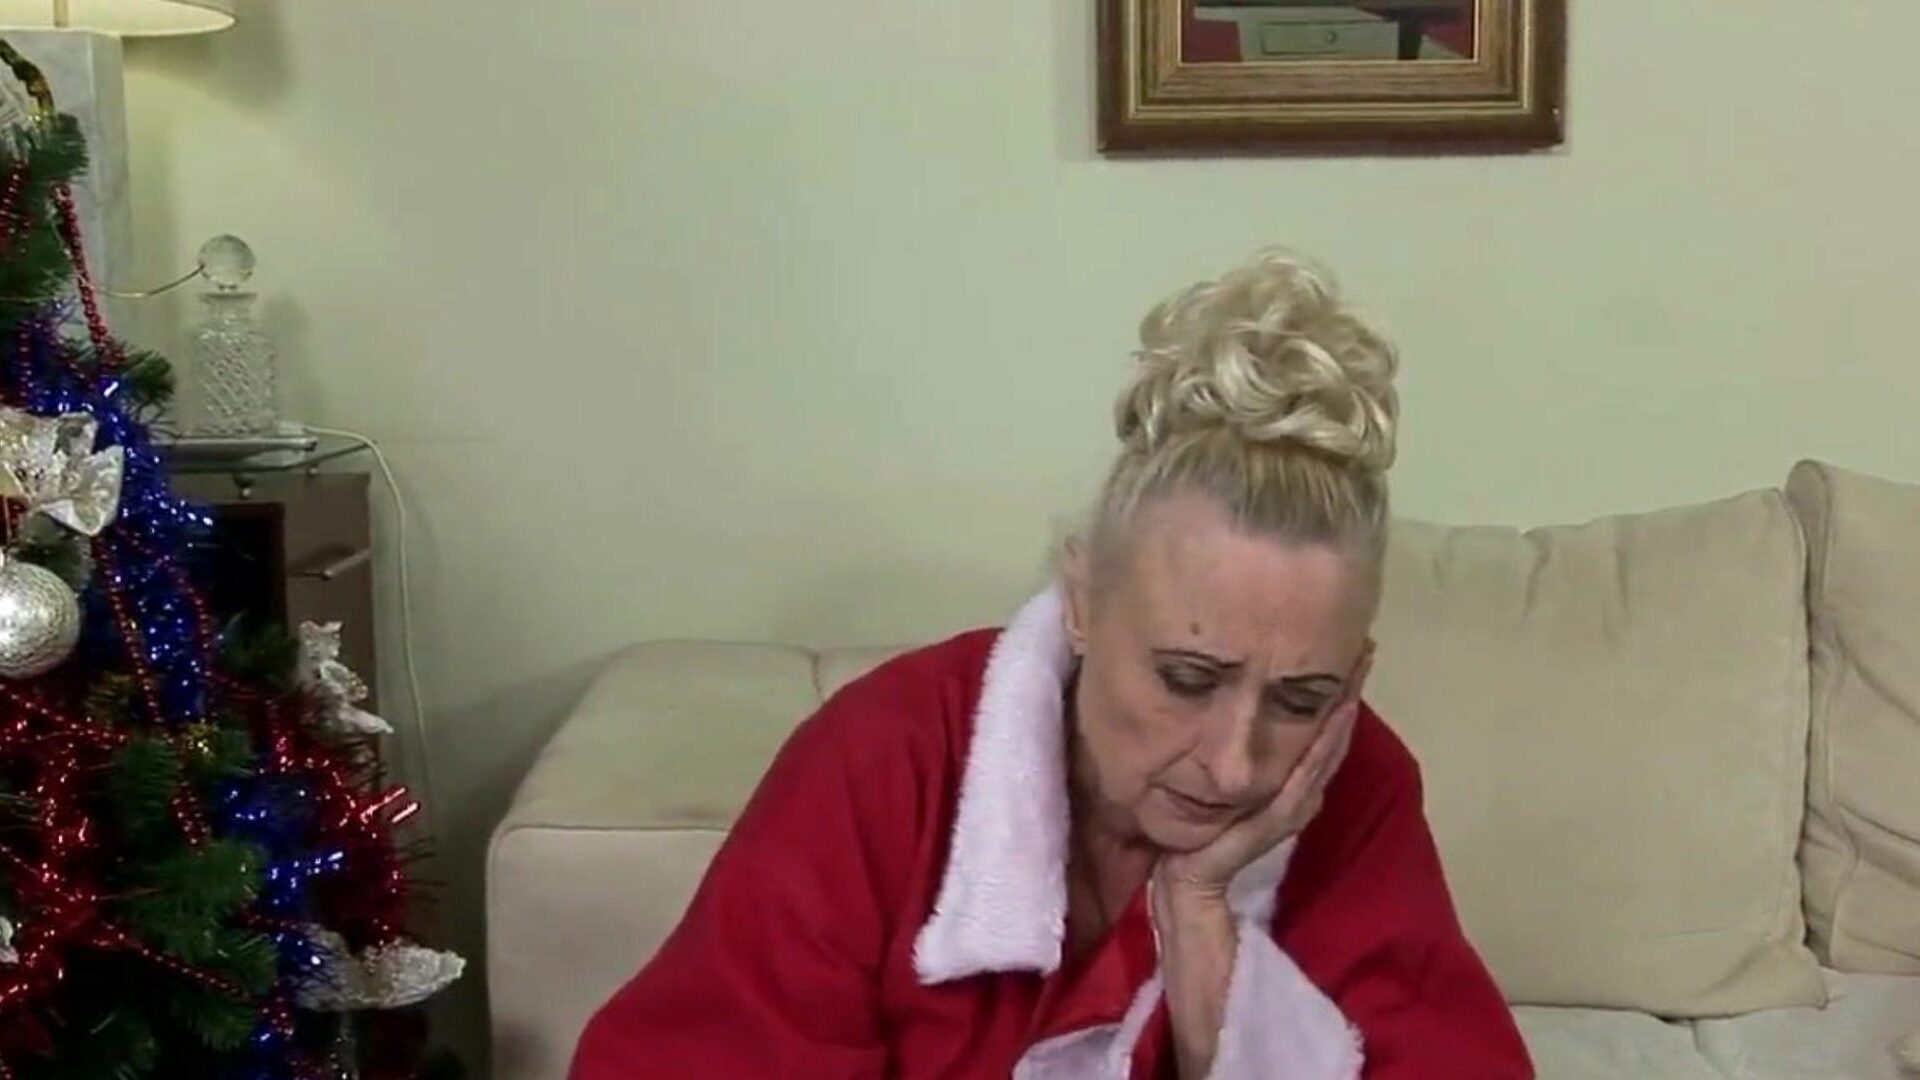 bunicuța nu vrea să petreacă Crăciun singur: porno gratuit e8 ceas bunicuță nu vrea să petreacă Crăciun singur episod pe xhamster - arhiva finală gratuit pentru toți gratis bunicuță și bunicuță free tube hd porno tube episode